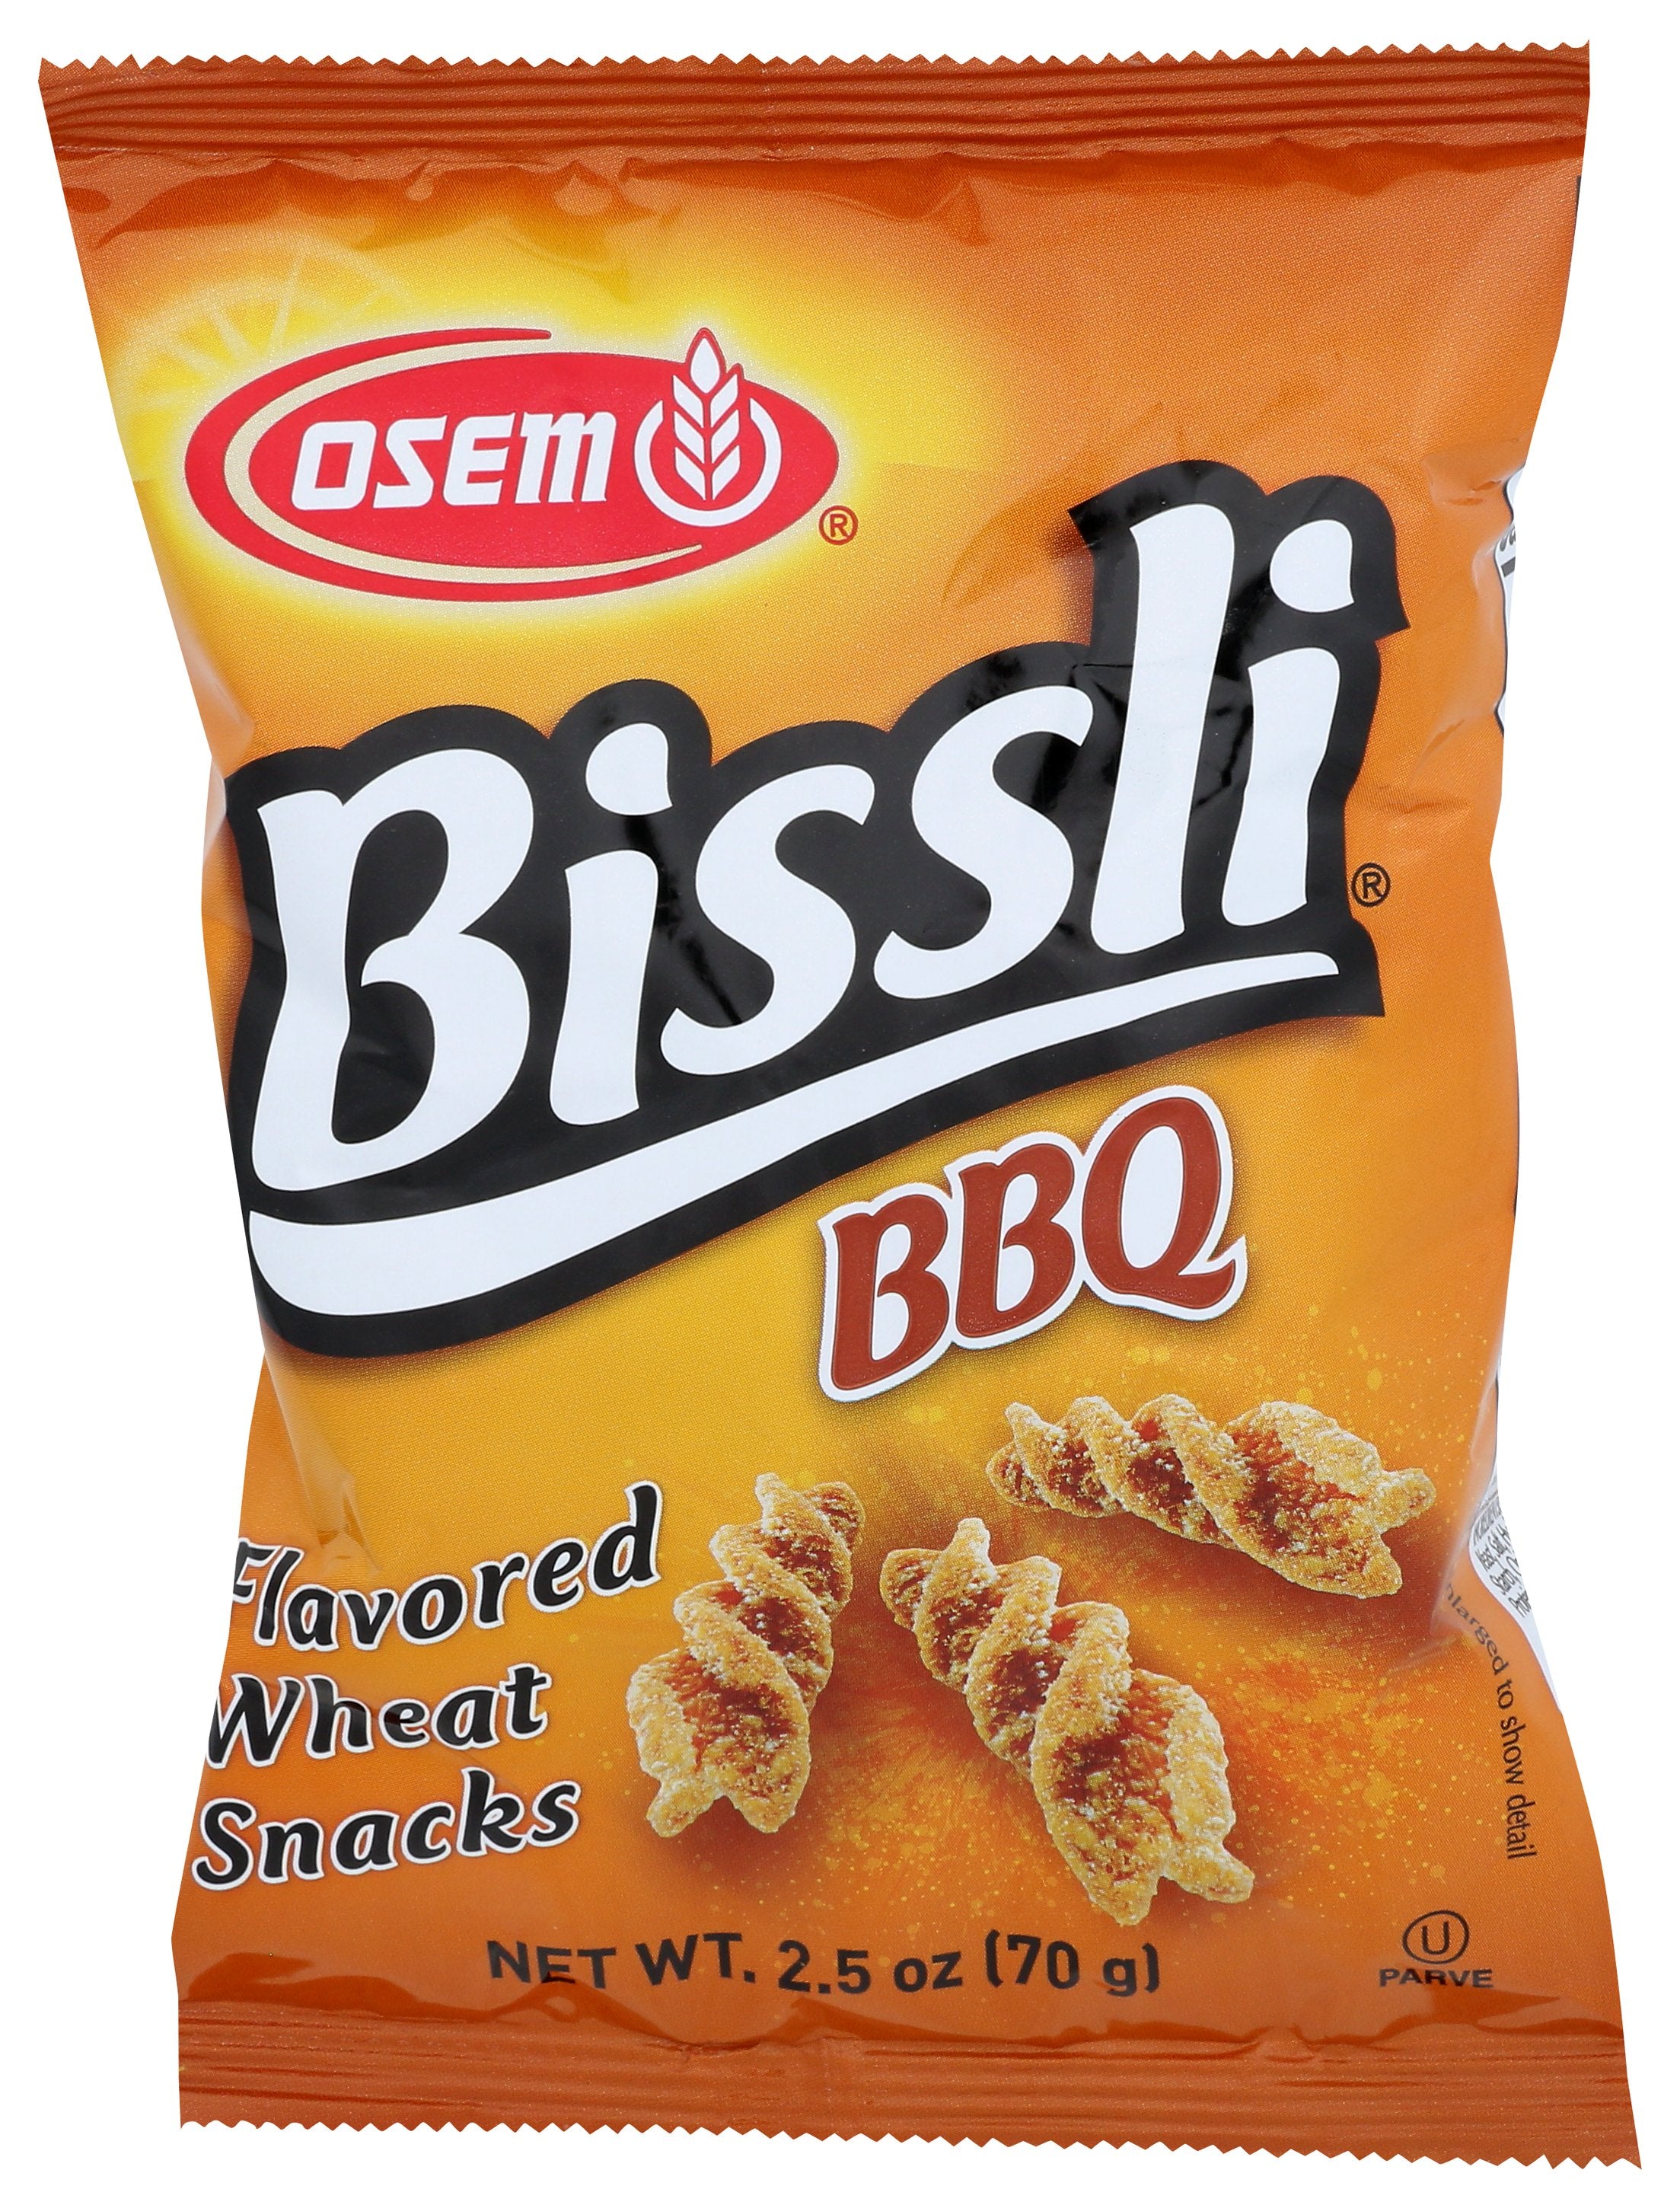 OSEM BISSLI BBQ - Case of 24